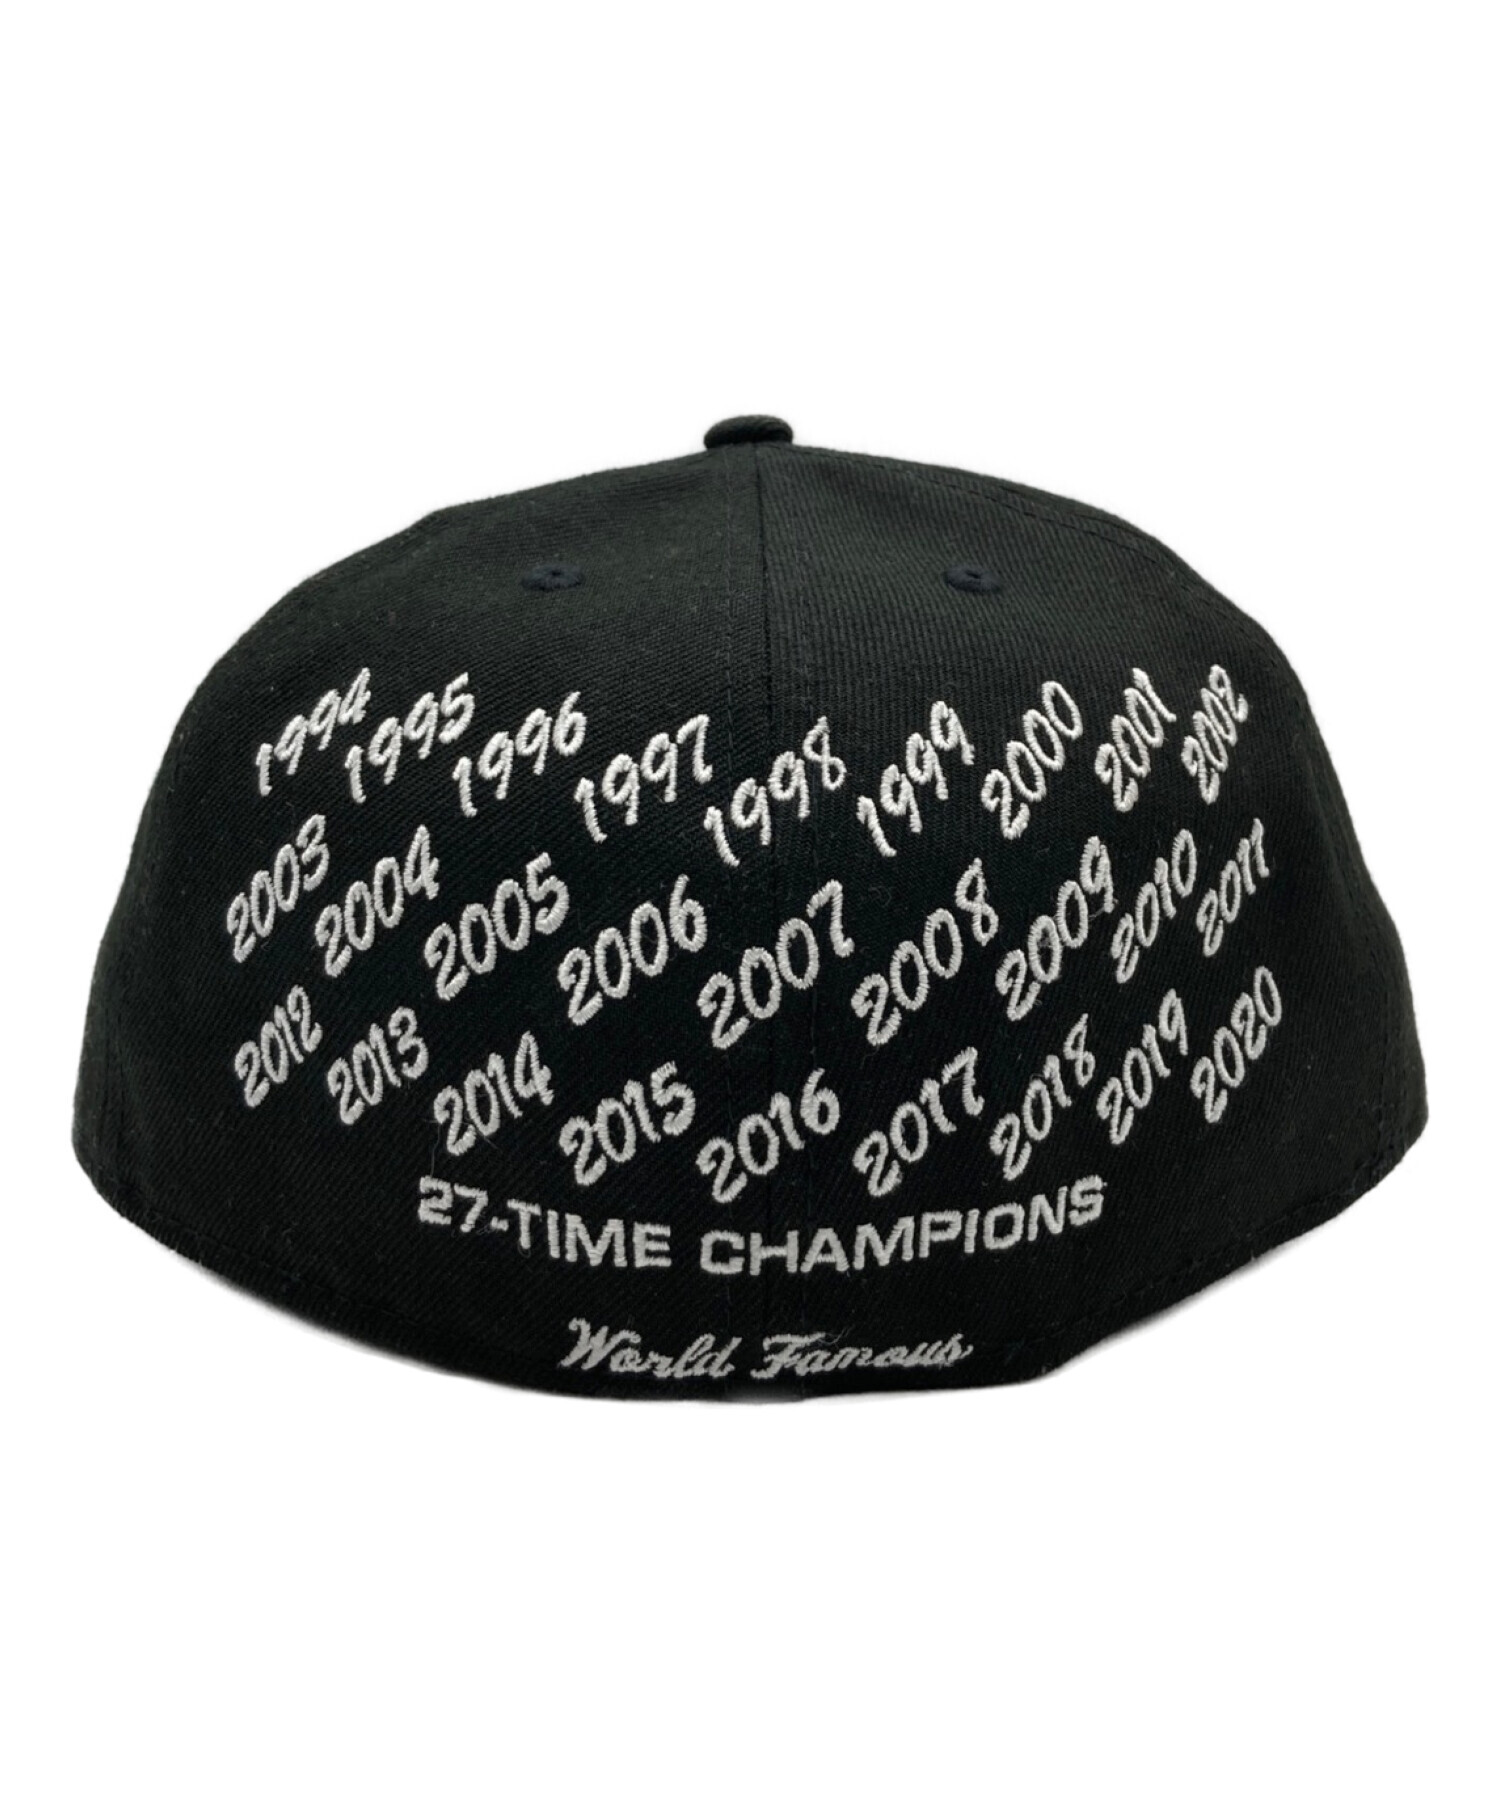 SUPREME×NEWERA (シュプリーム × ニューエラ) 27-time Champions BoxLogo CAP ブラック サイズ:SIZE  7 3/8